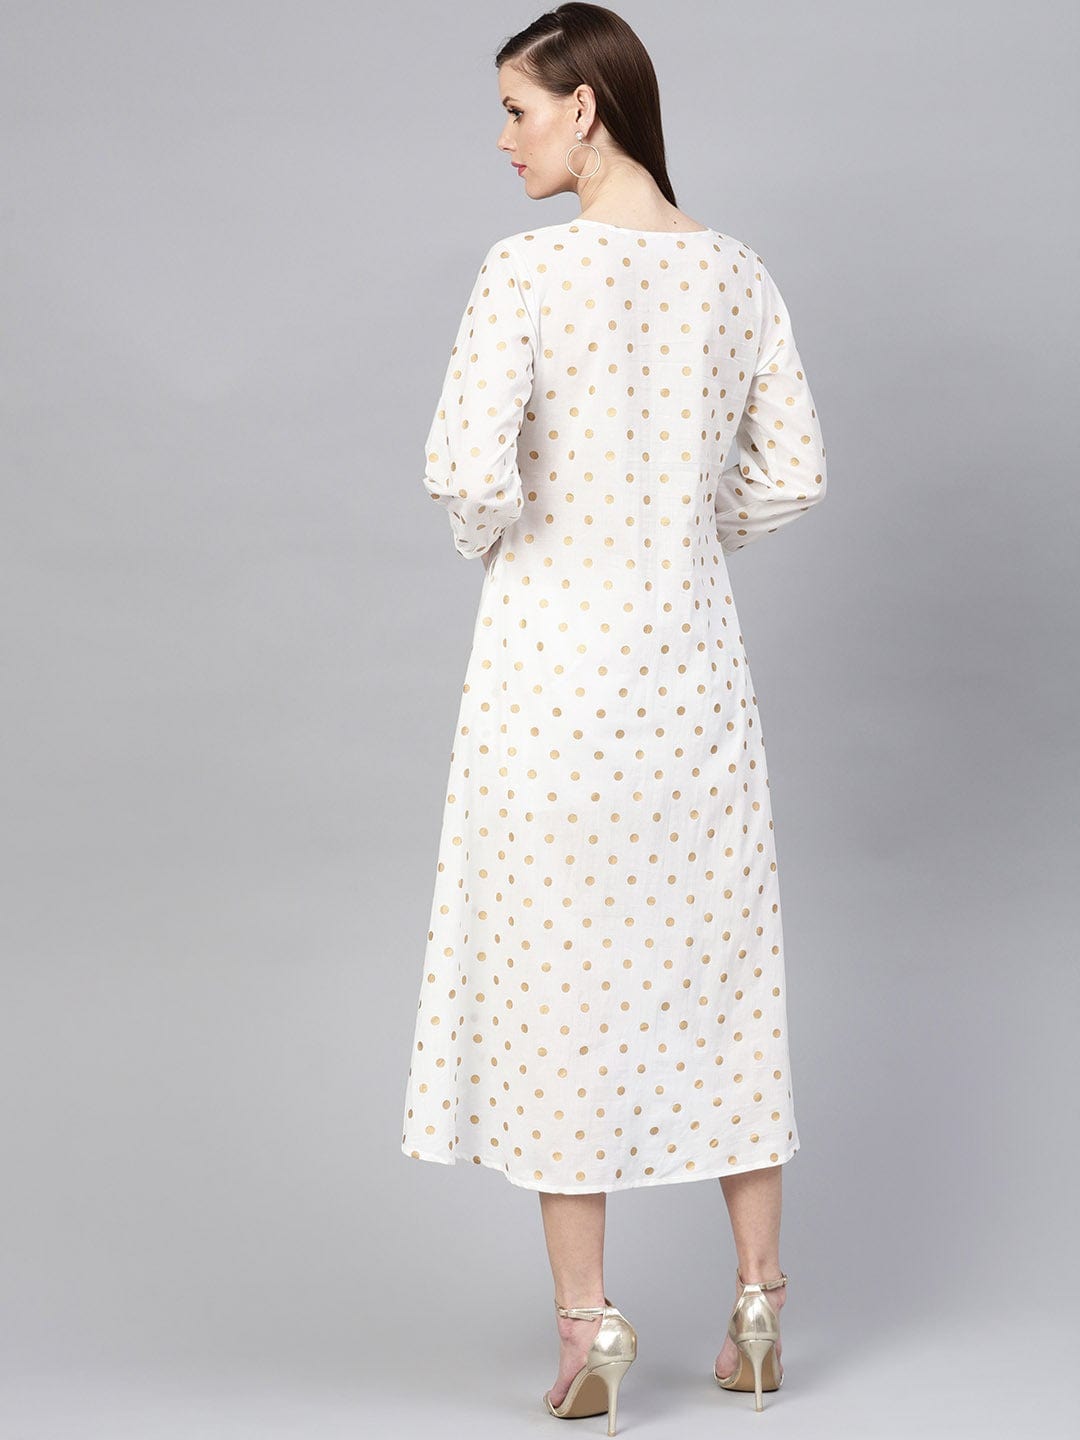 Women's White & Beige Polka Dots Printed A-Line Dress - Varanga